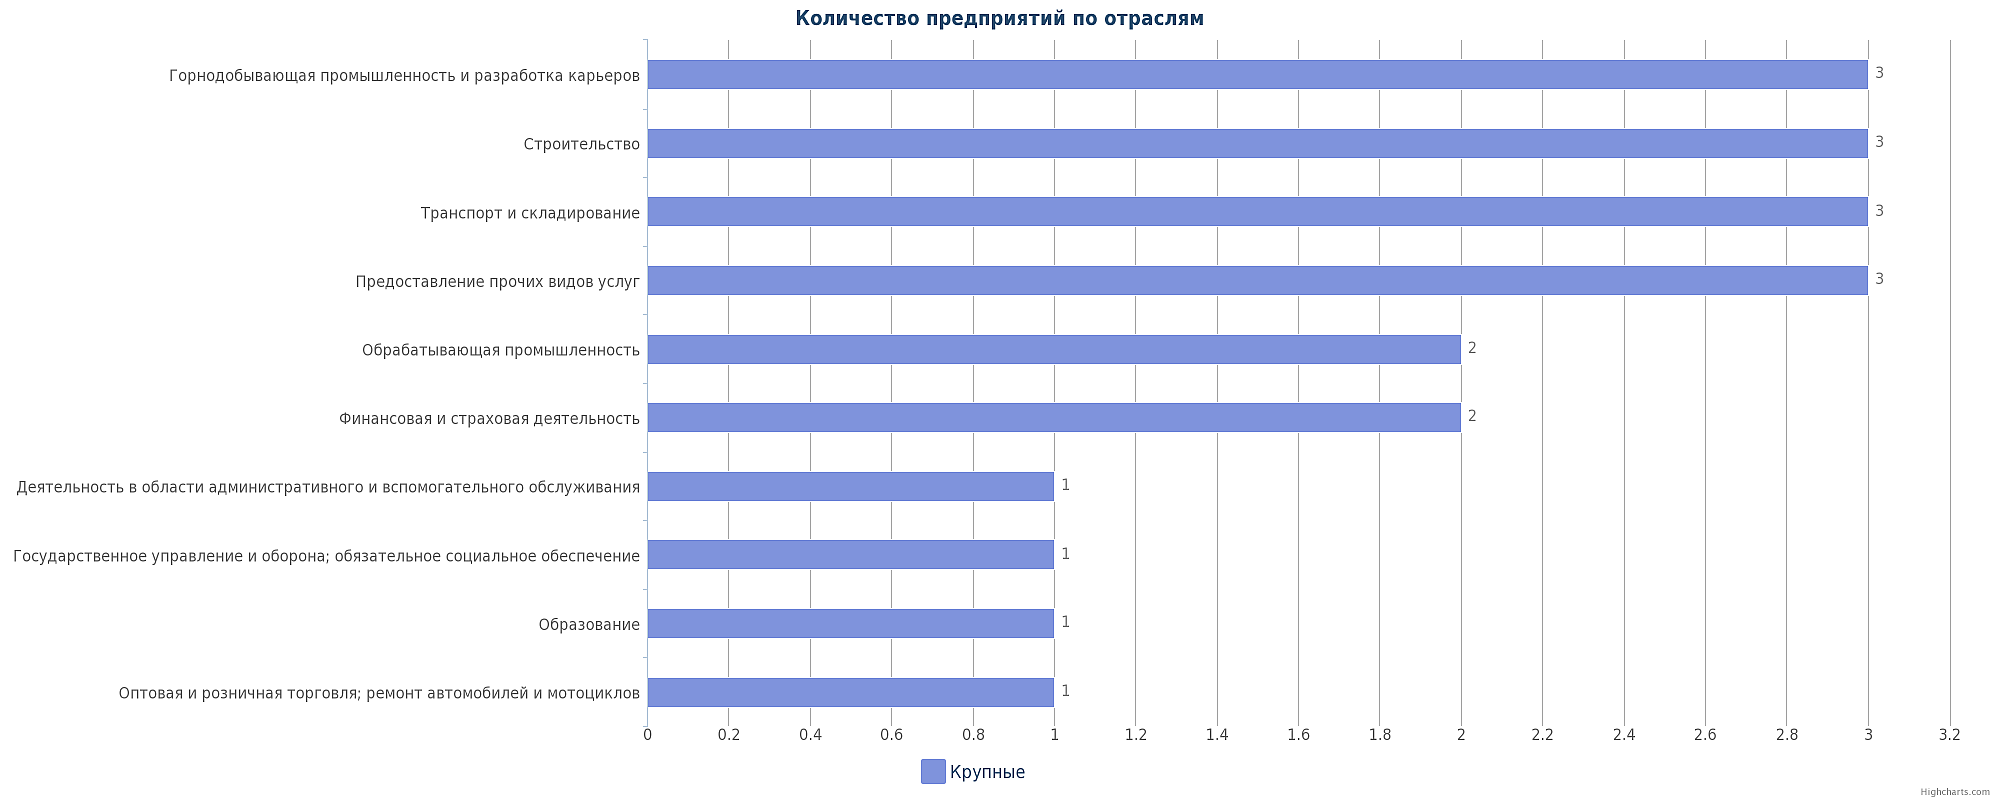 Новые крупные компании и предприятия Казахстана за 6 месяцев